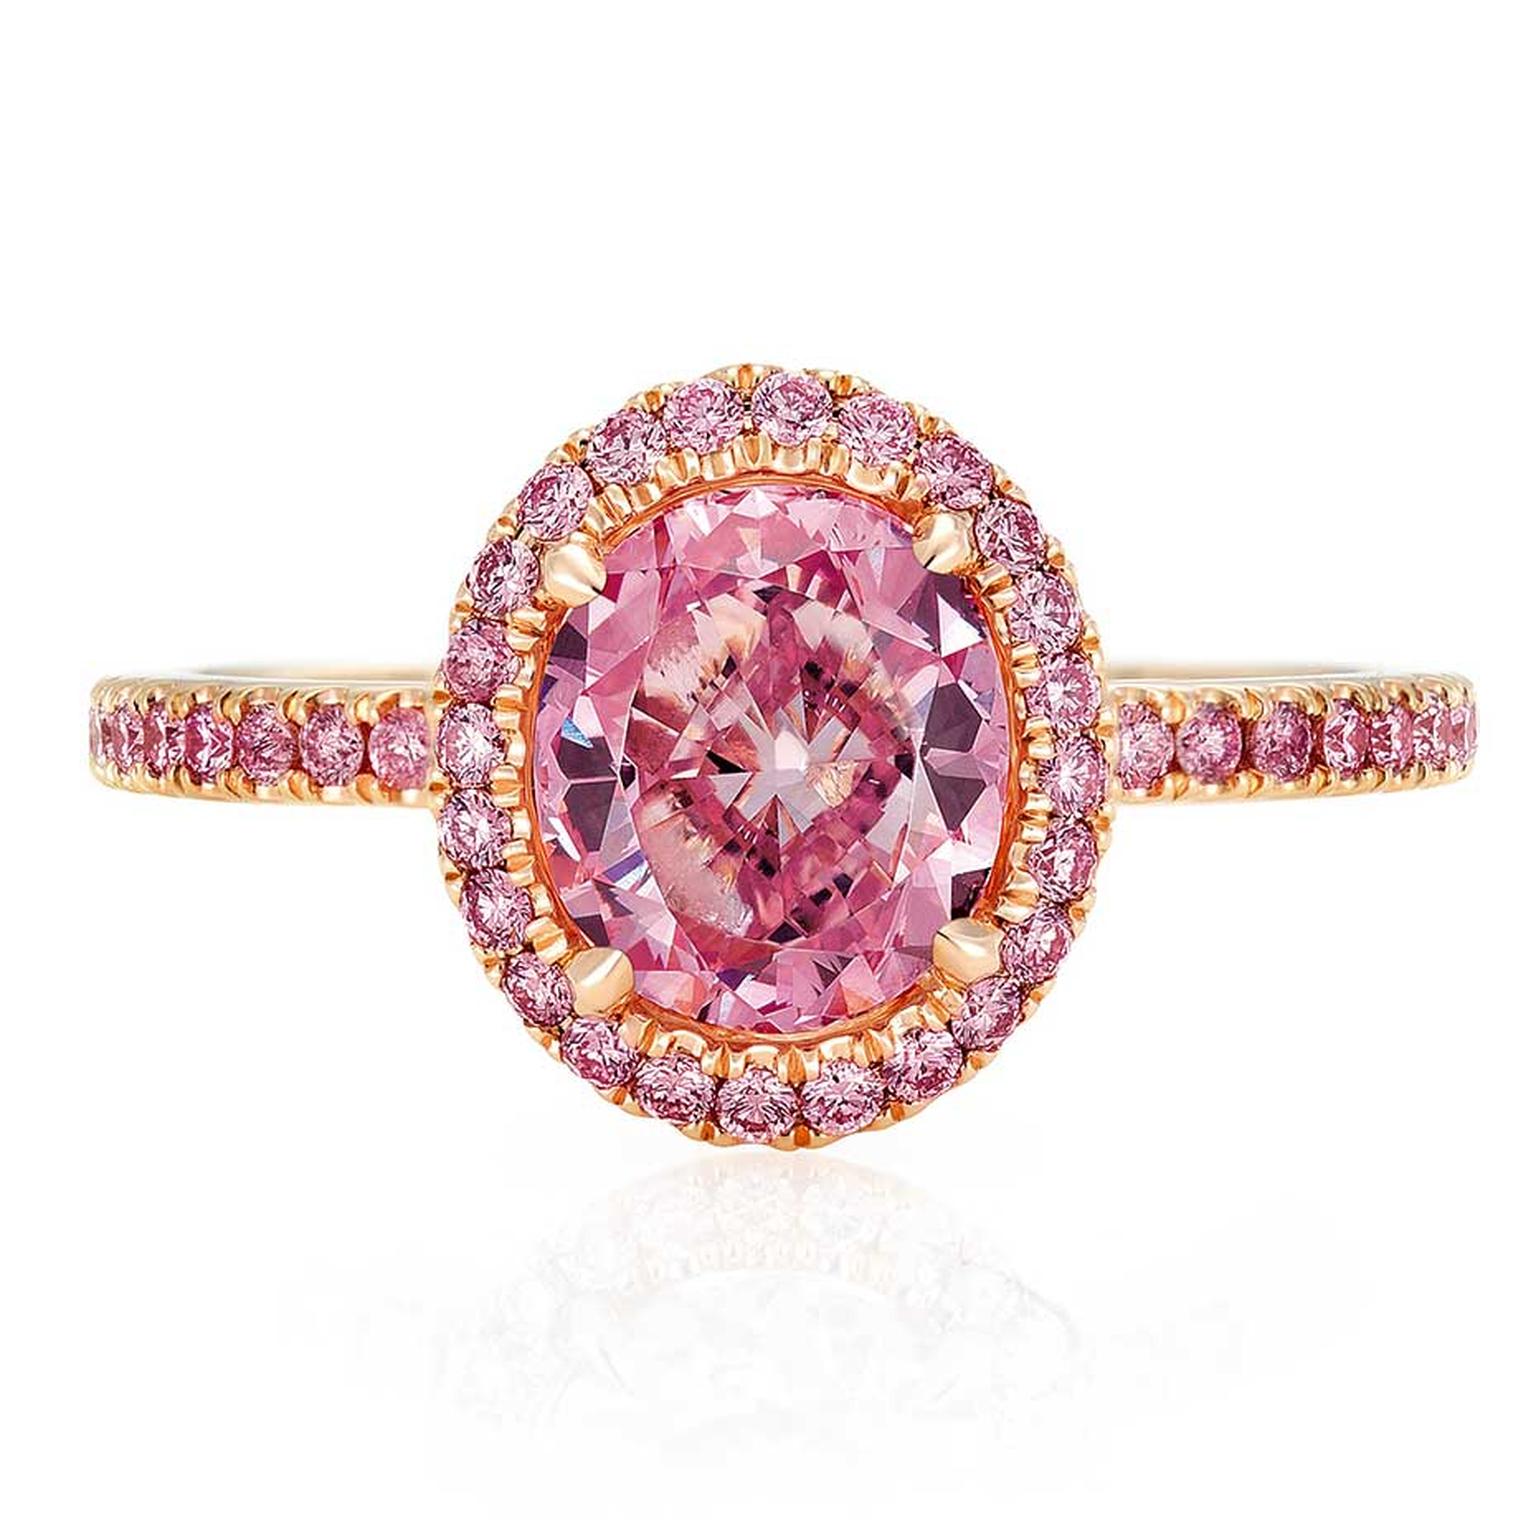 De Beers Aura pink diamond engagement ring in pink gold (£POA)